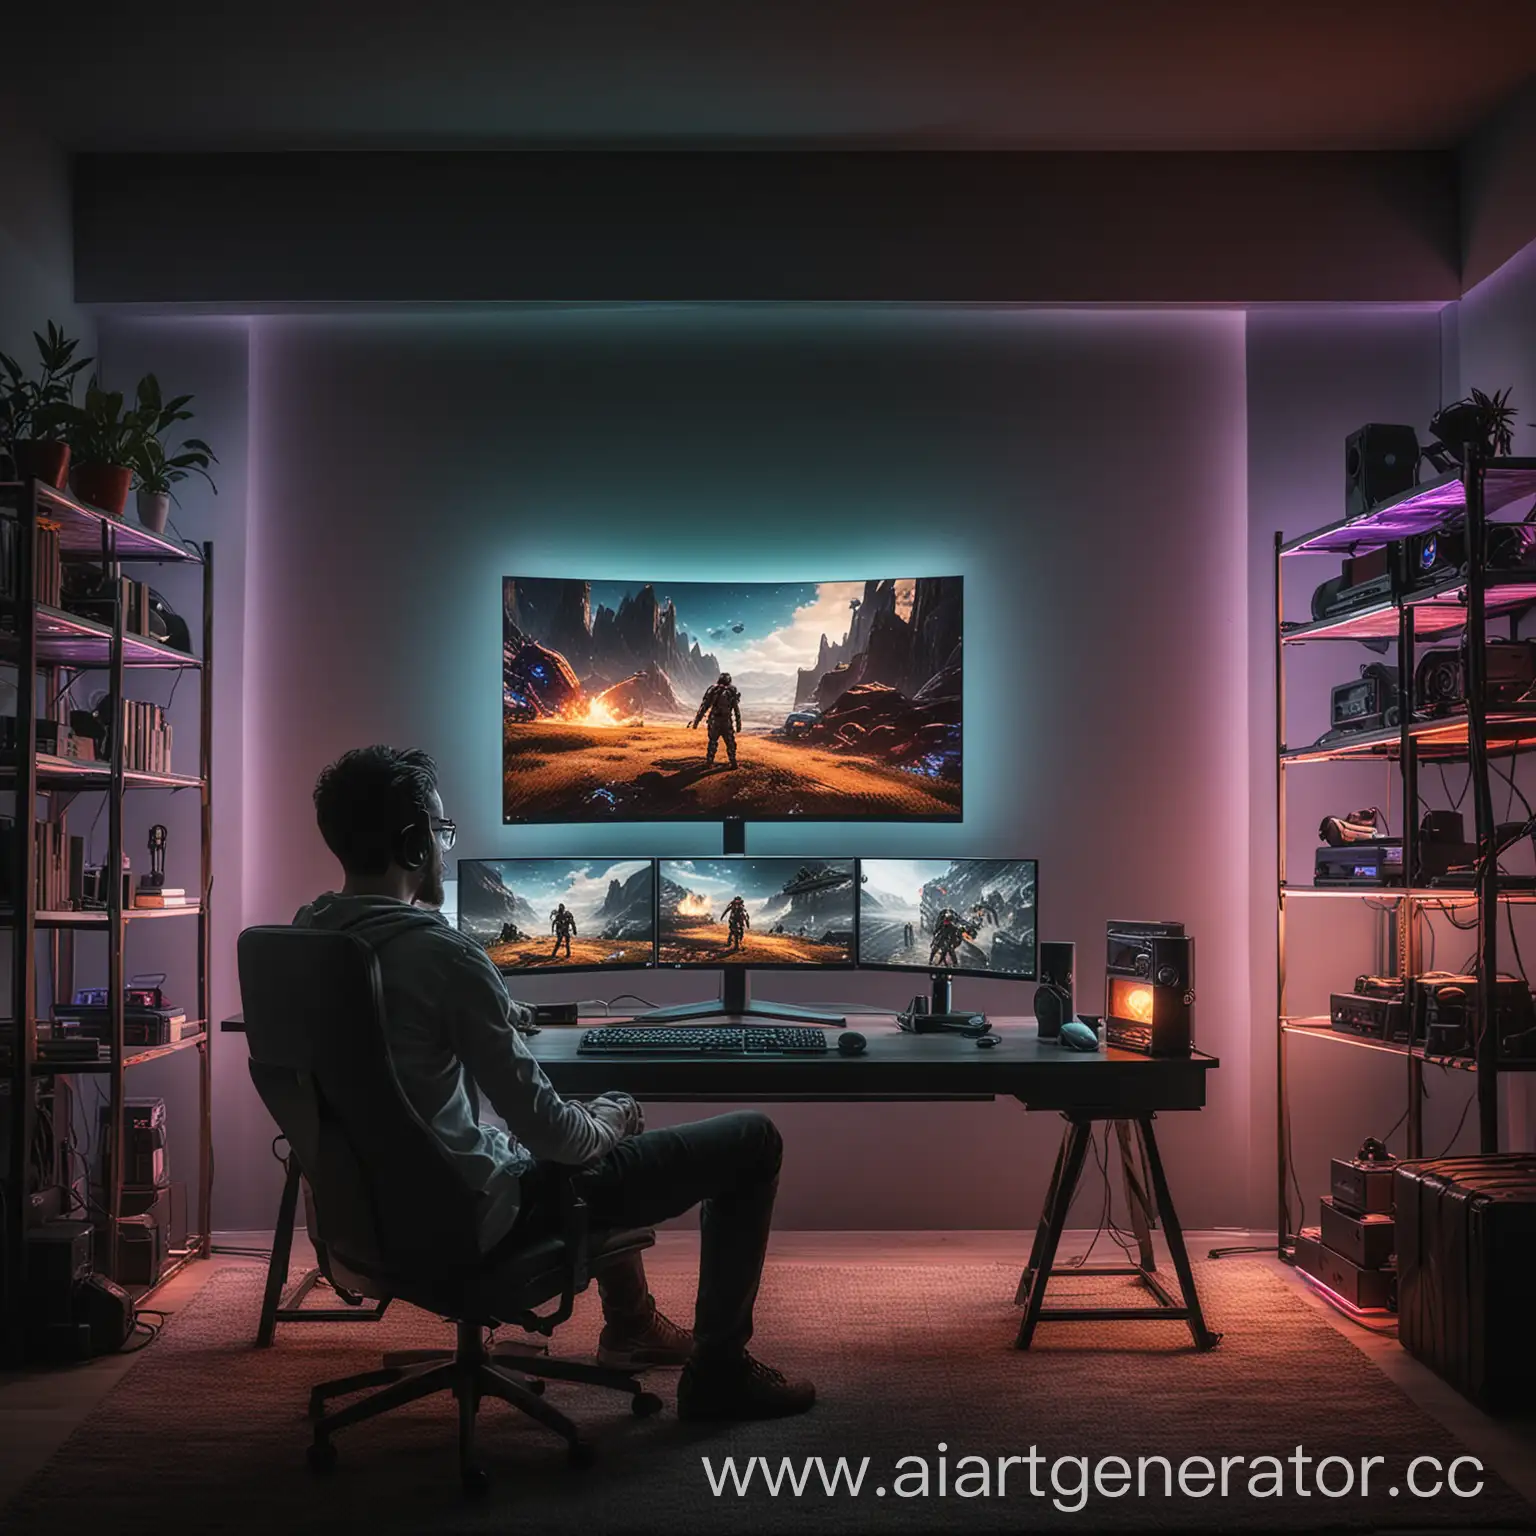 Парень сидит перед крутым игровым компьютером в очень стильно обставленной комнате, освещенной RGB, Кадр направлен между парнем и монитором и парень смотрит в монитор